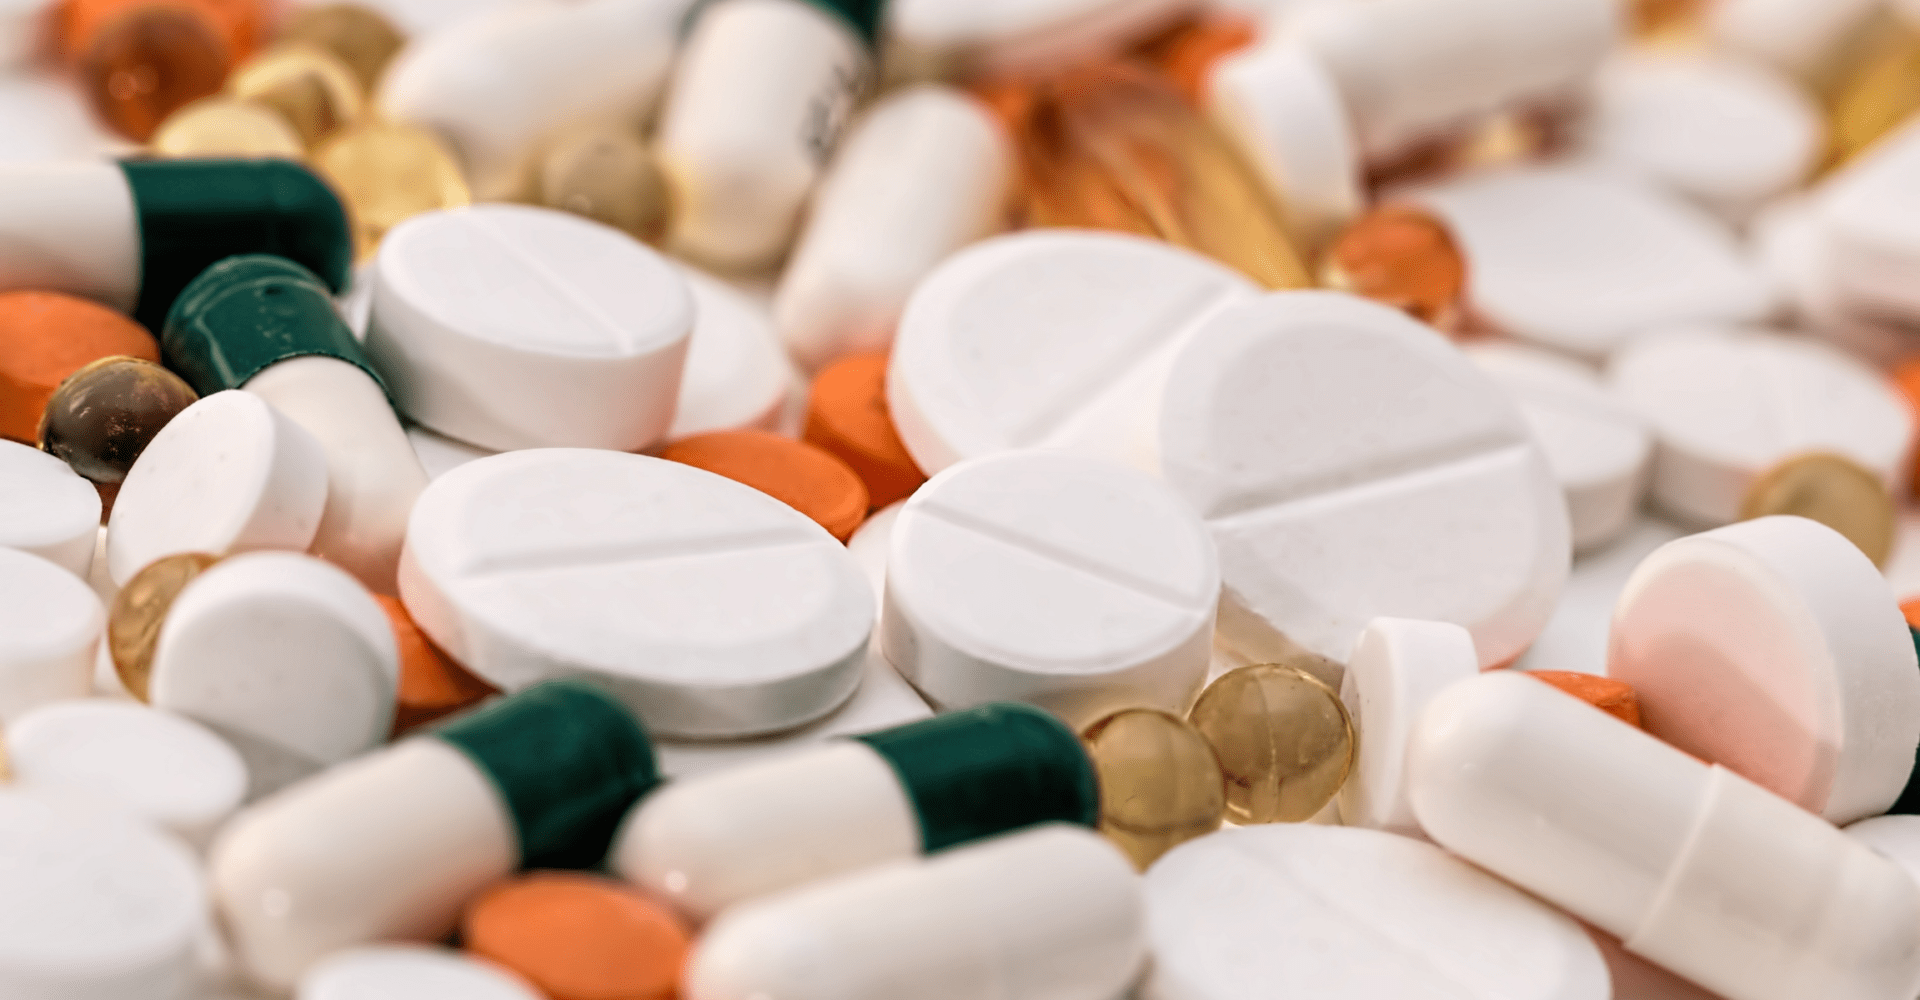 Tabletki: białe okrągłe, biało-ciemno-zielone kapsułki, pomarańczowe okrągłe.